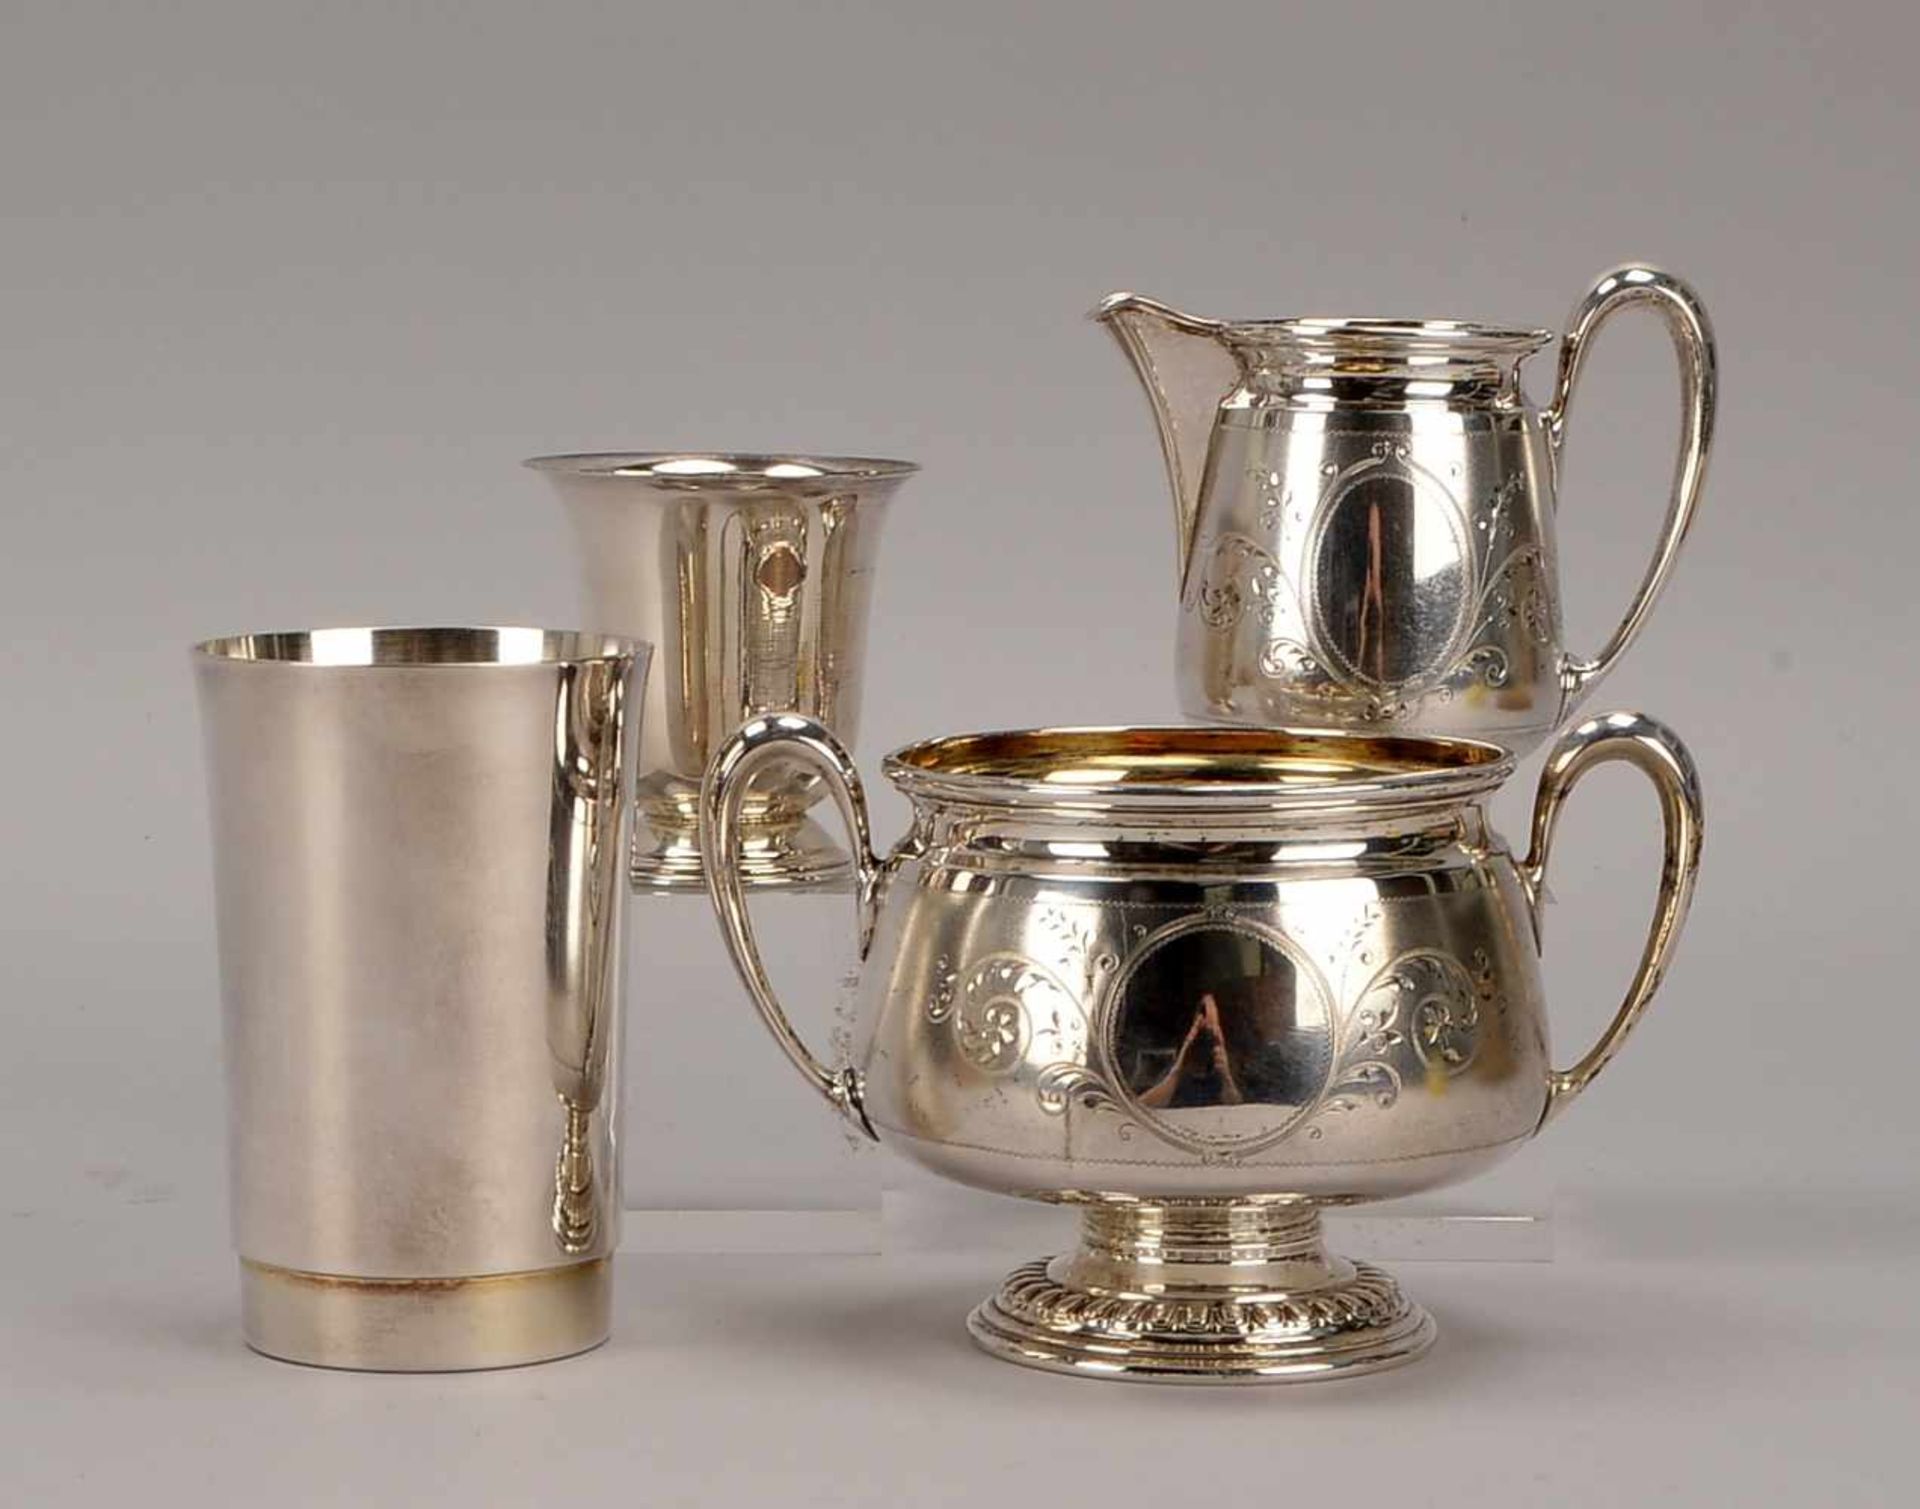 Silber-Konvolut, 4 Teile, verschiedene Manufakturen/davon 2x Koch & Bergfeld: 1 Zuckertopf, Höhe 9,5